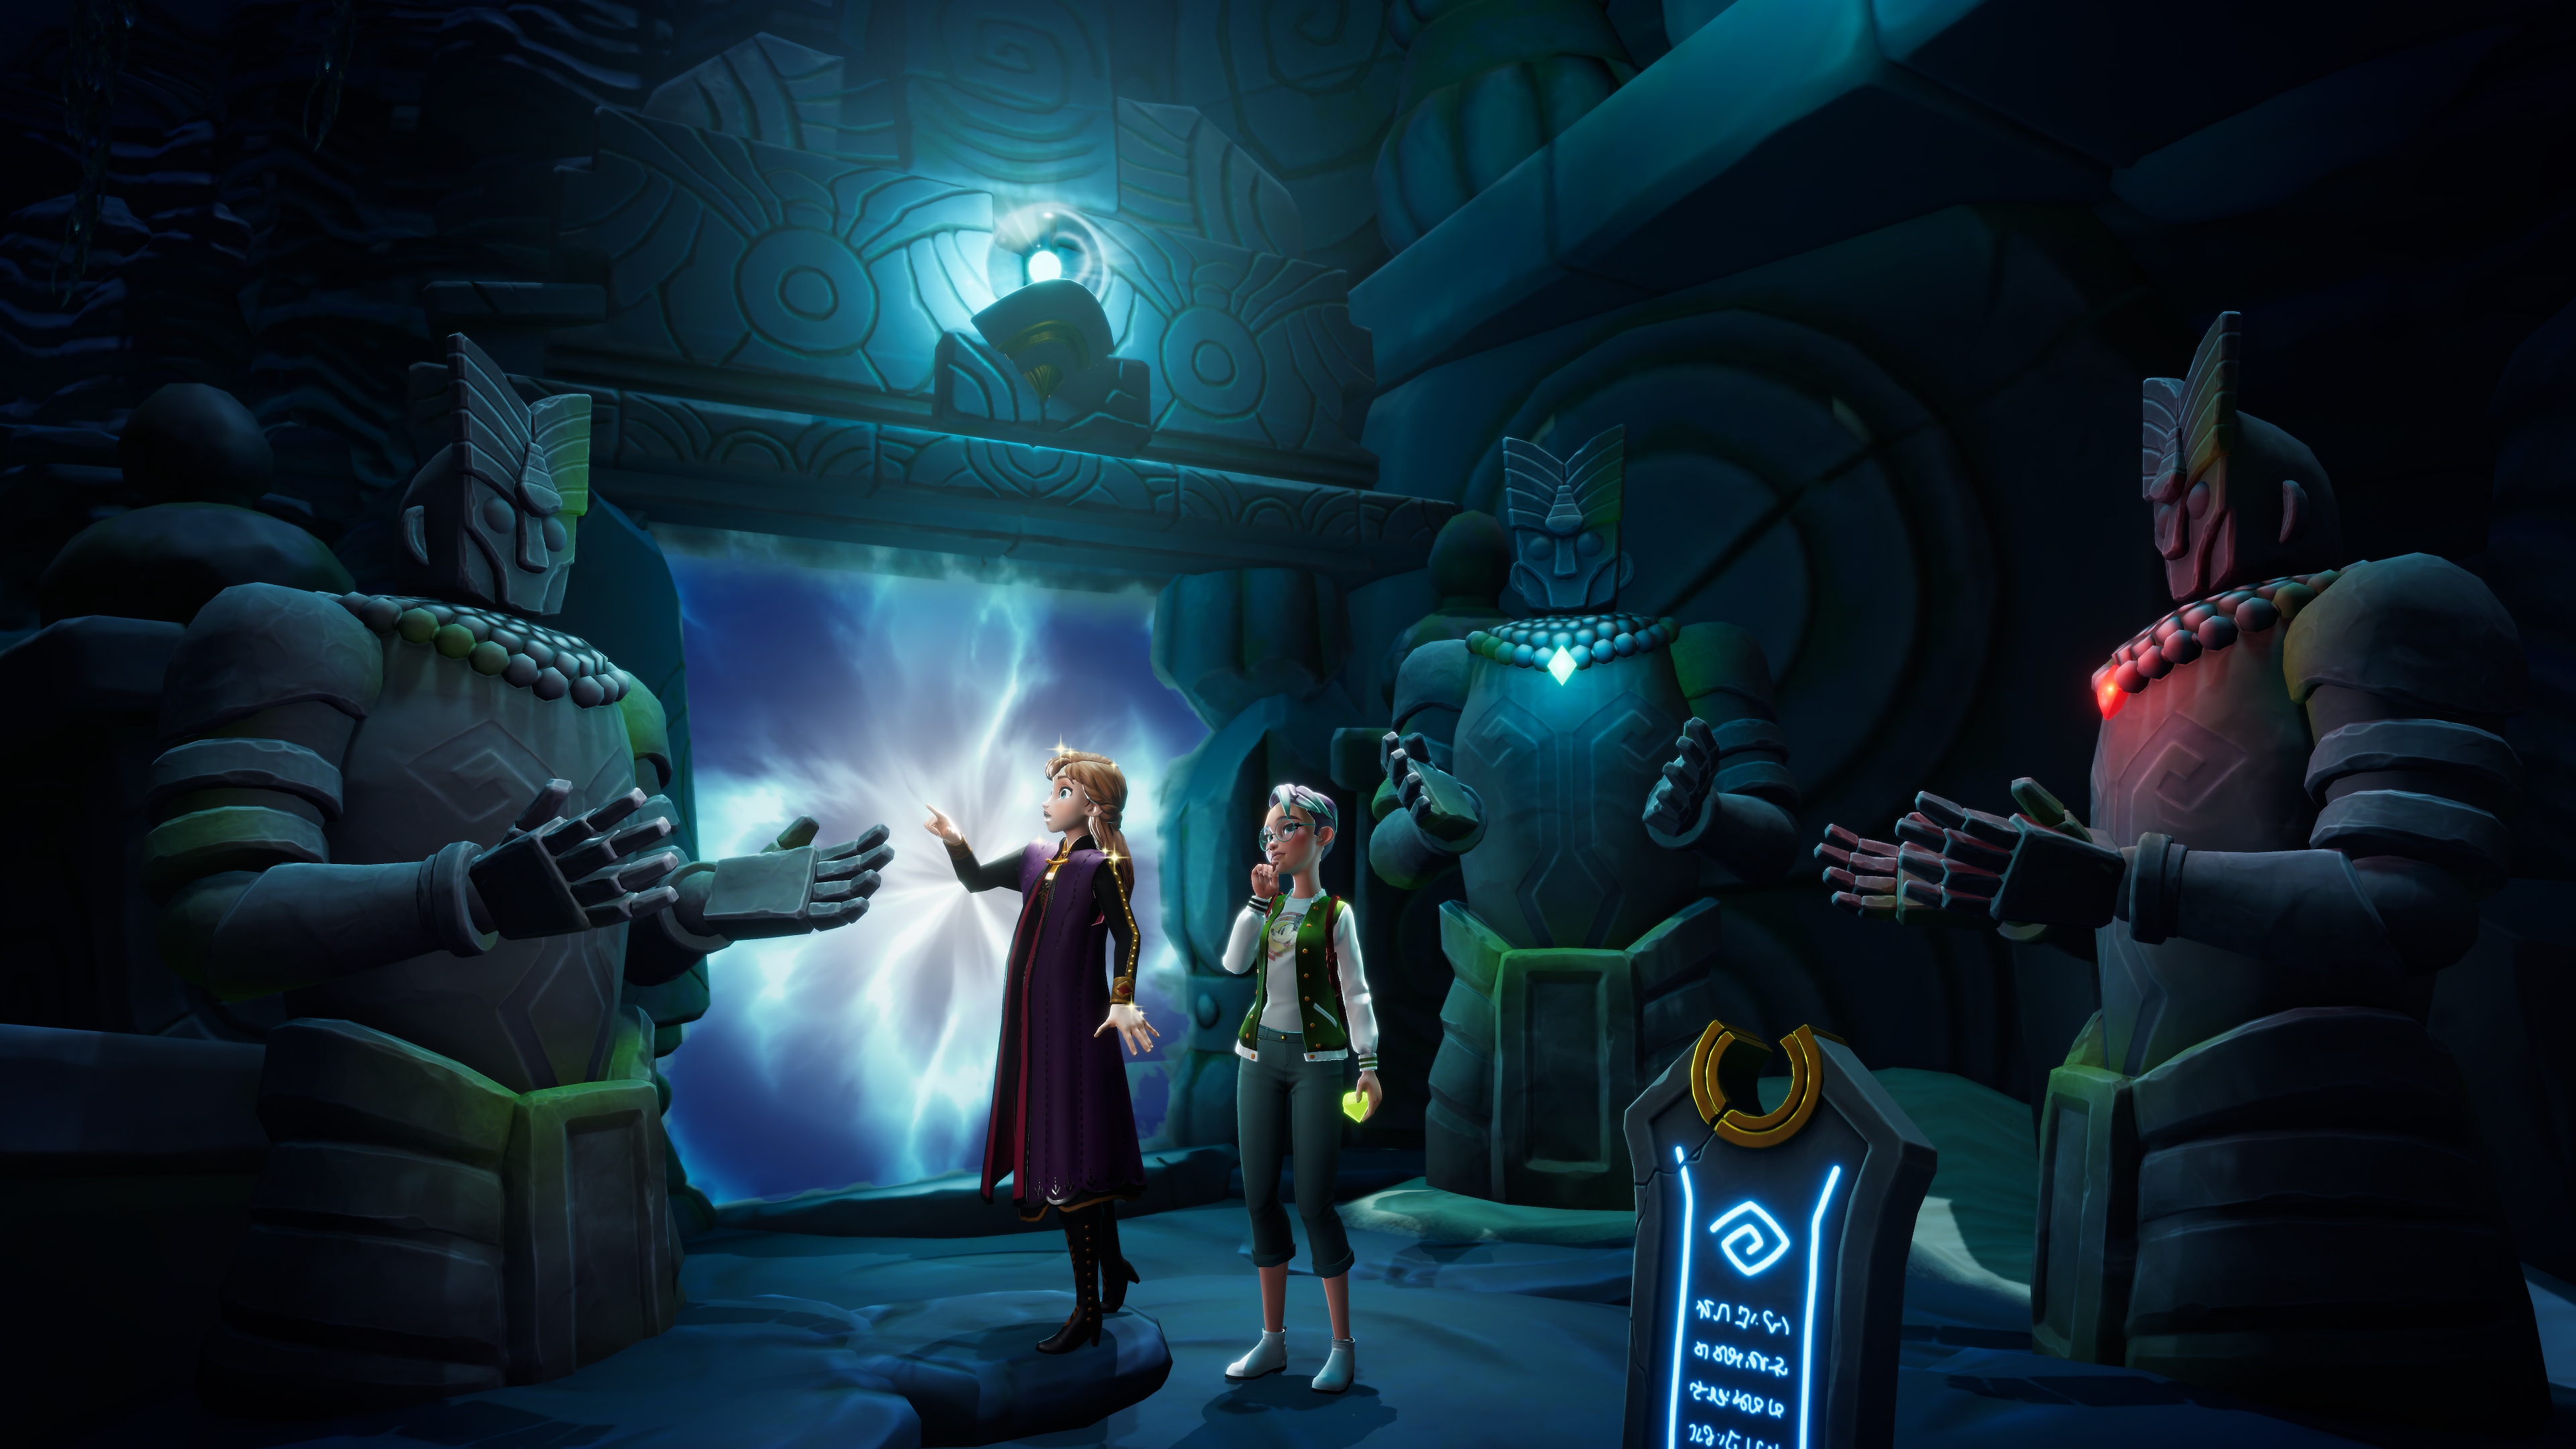 لقطة شاشة للعبة Disney Dreamlight Valley تعرض شخصيتين تحيط بهما تماثيل حجرية